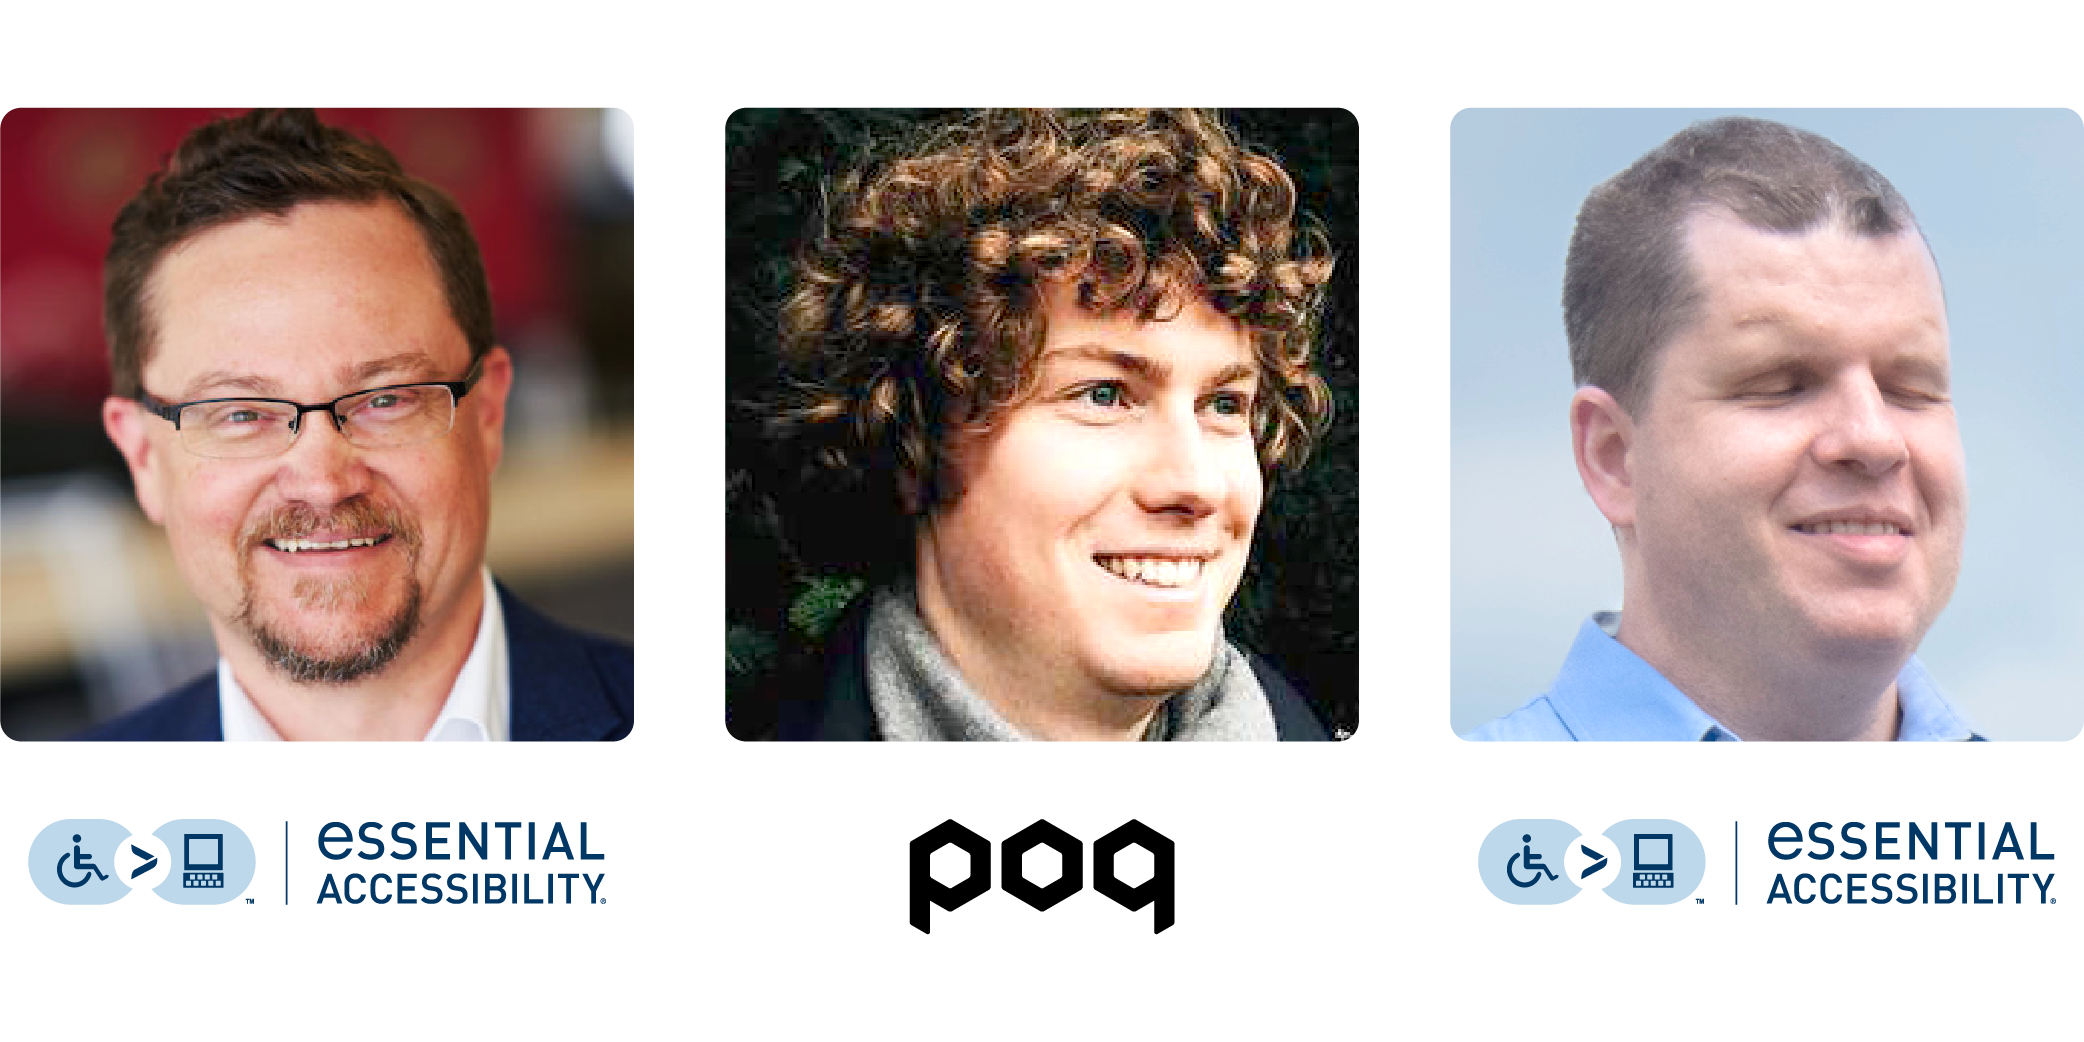 webinar speakers: Ian Lowe, Tom Babinszki and Chris Long